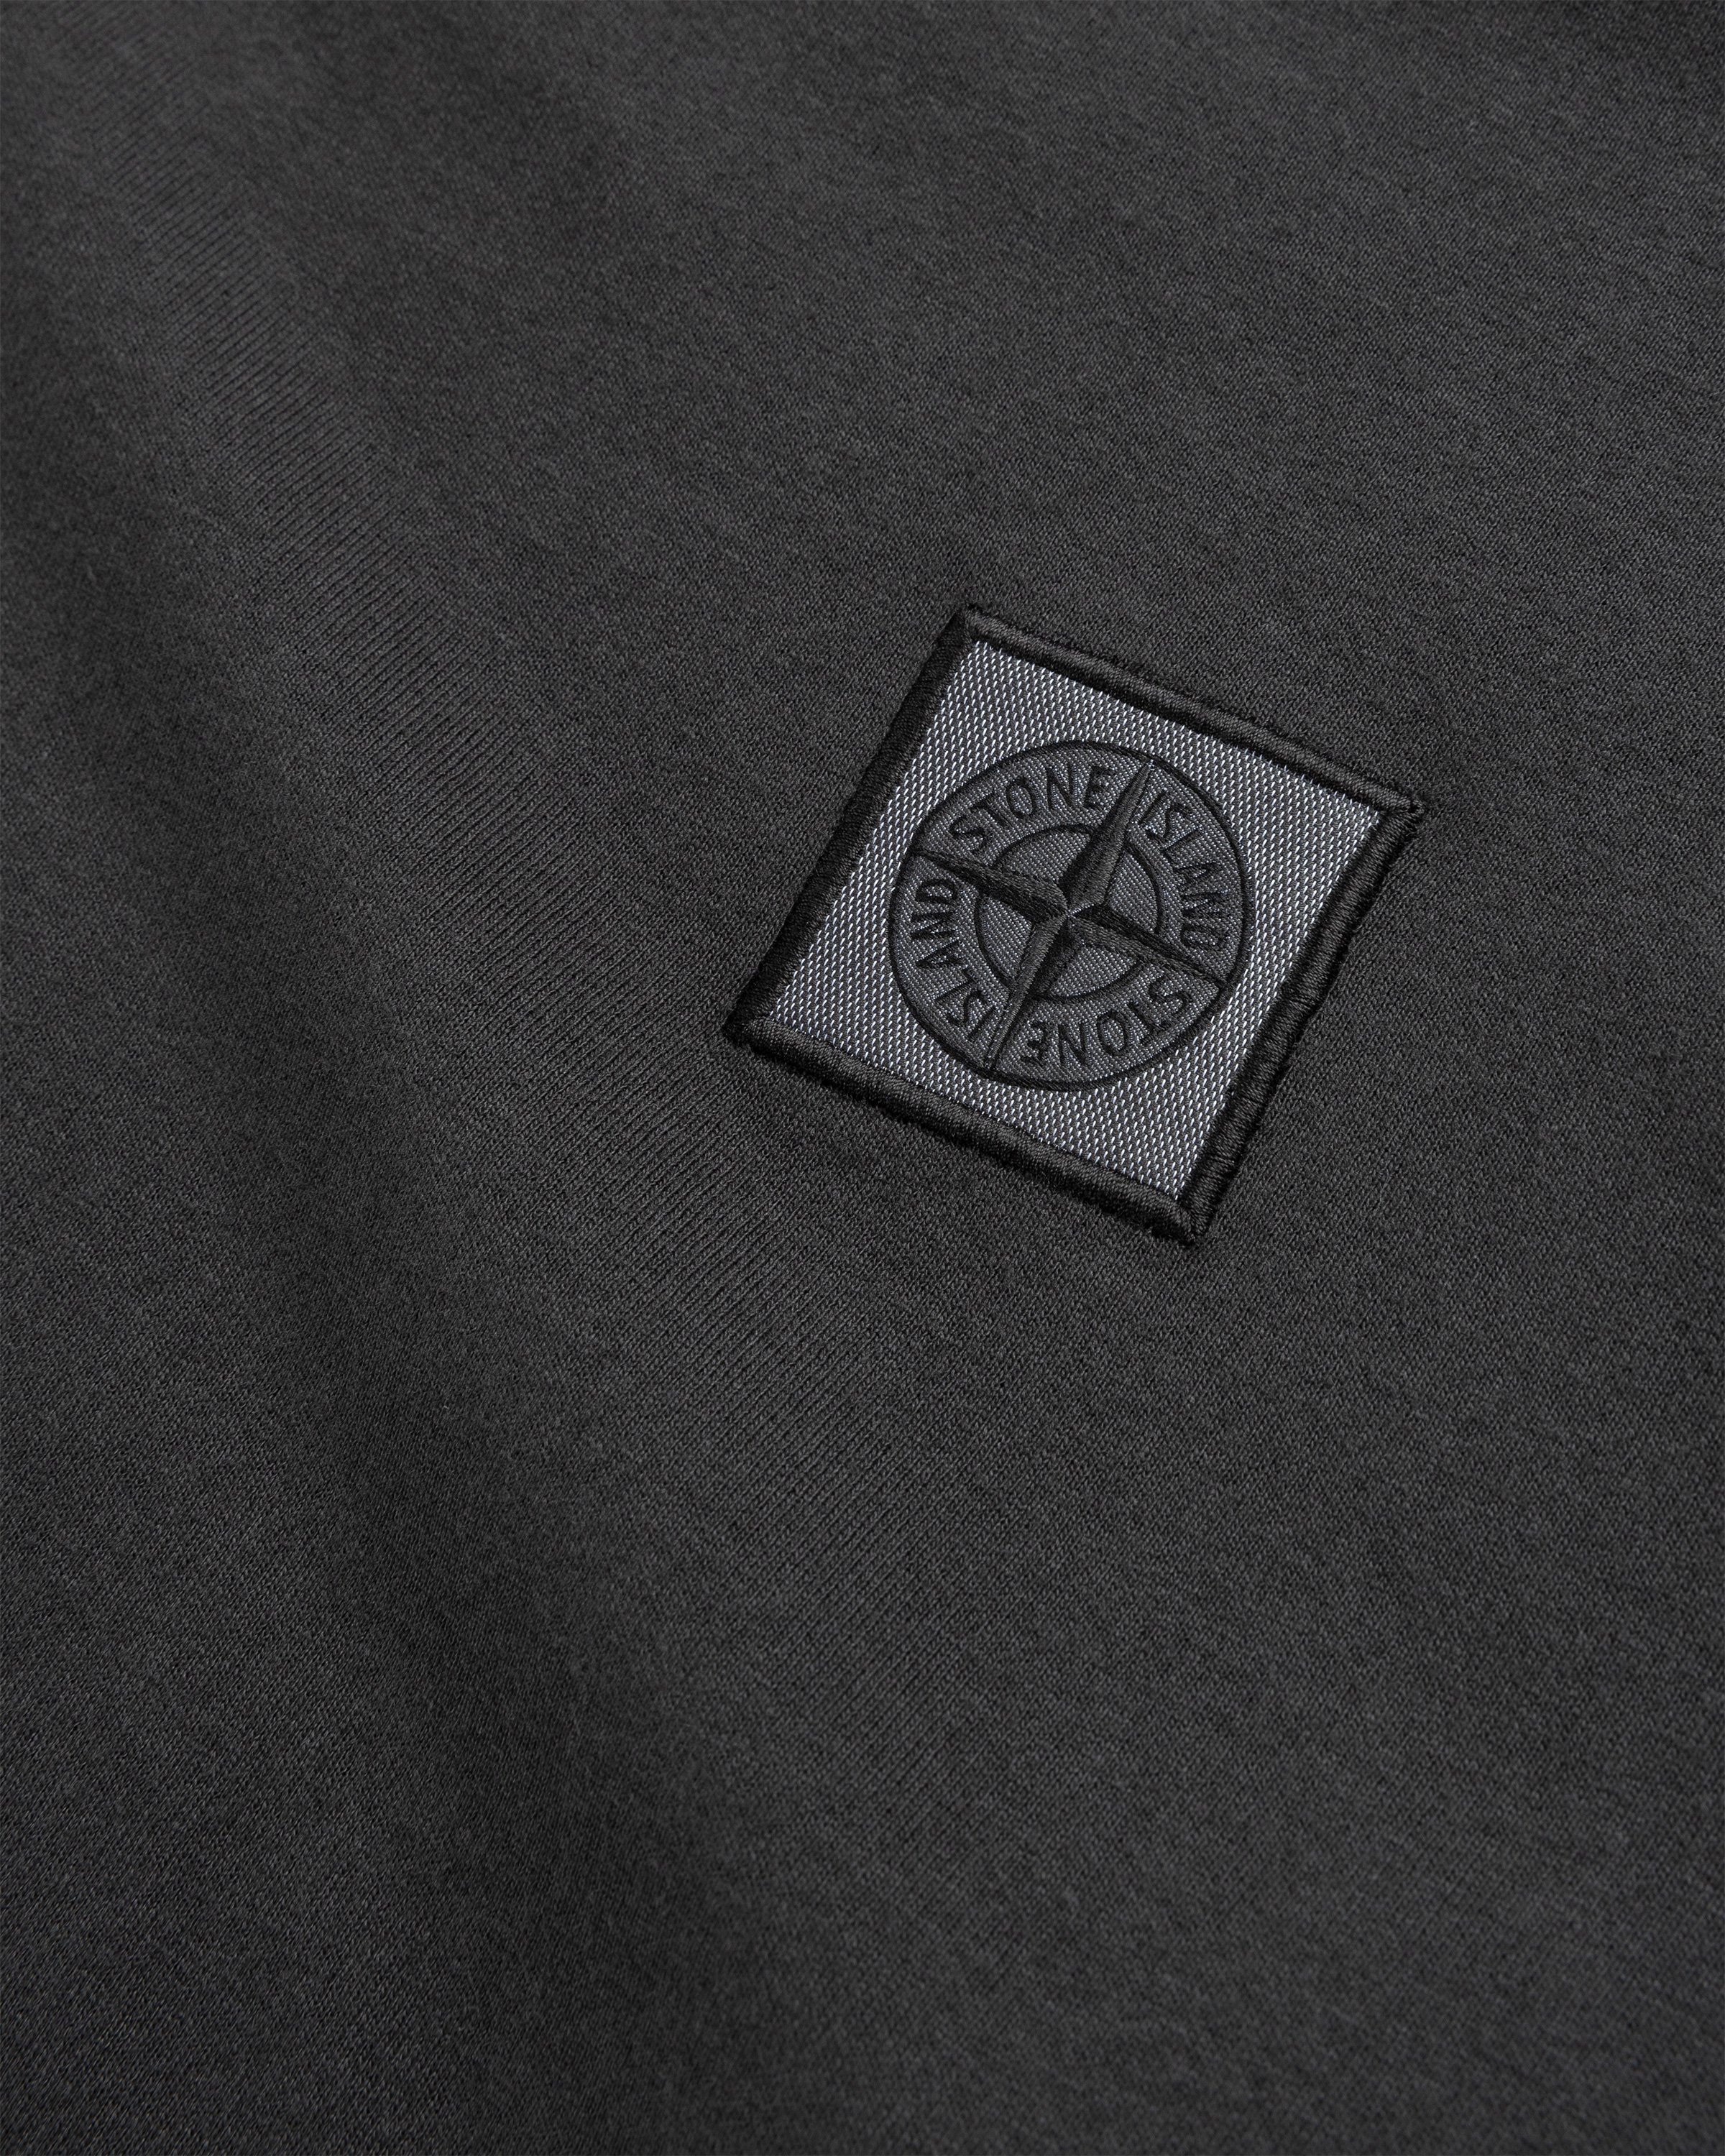 Stone Island - Fissato Longsleeve T-Shirt Charcoal - Clothing - Grey - Image 6